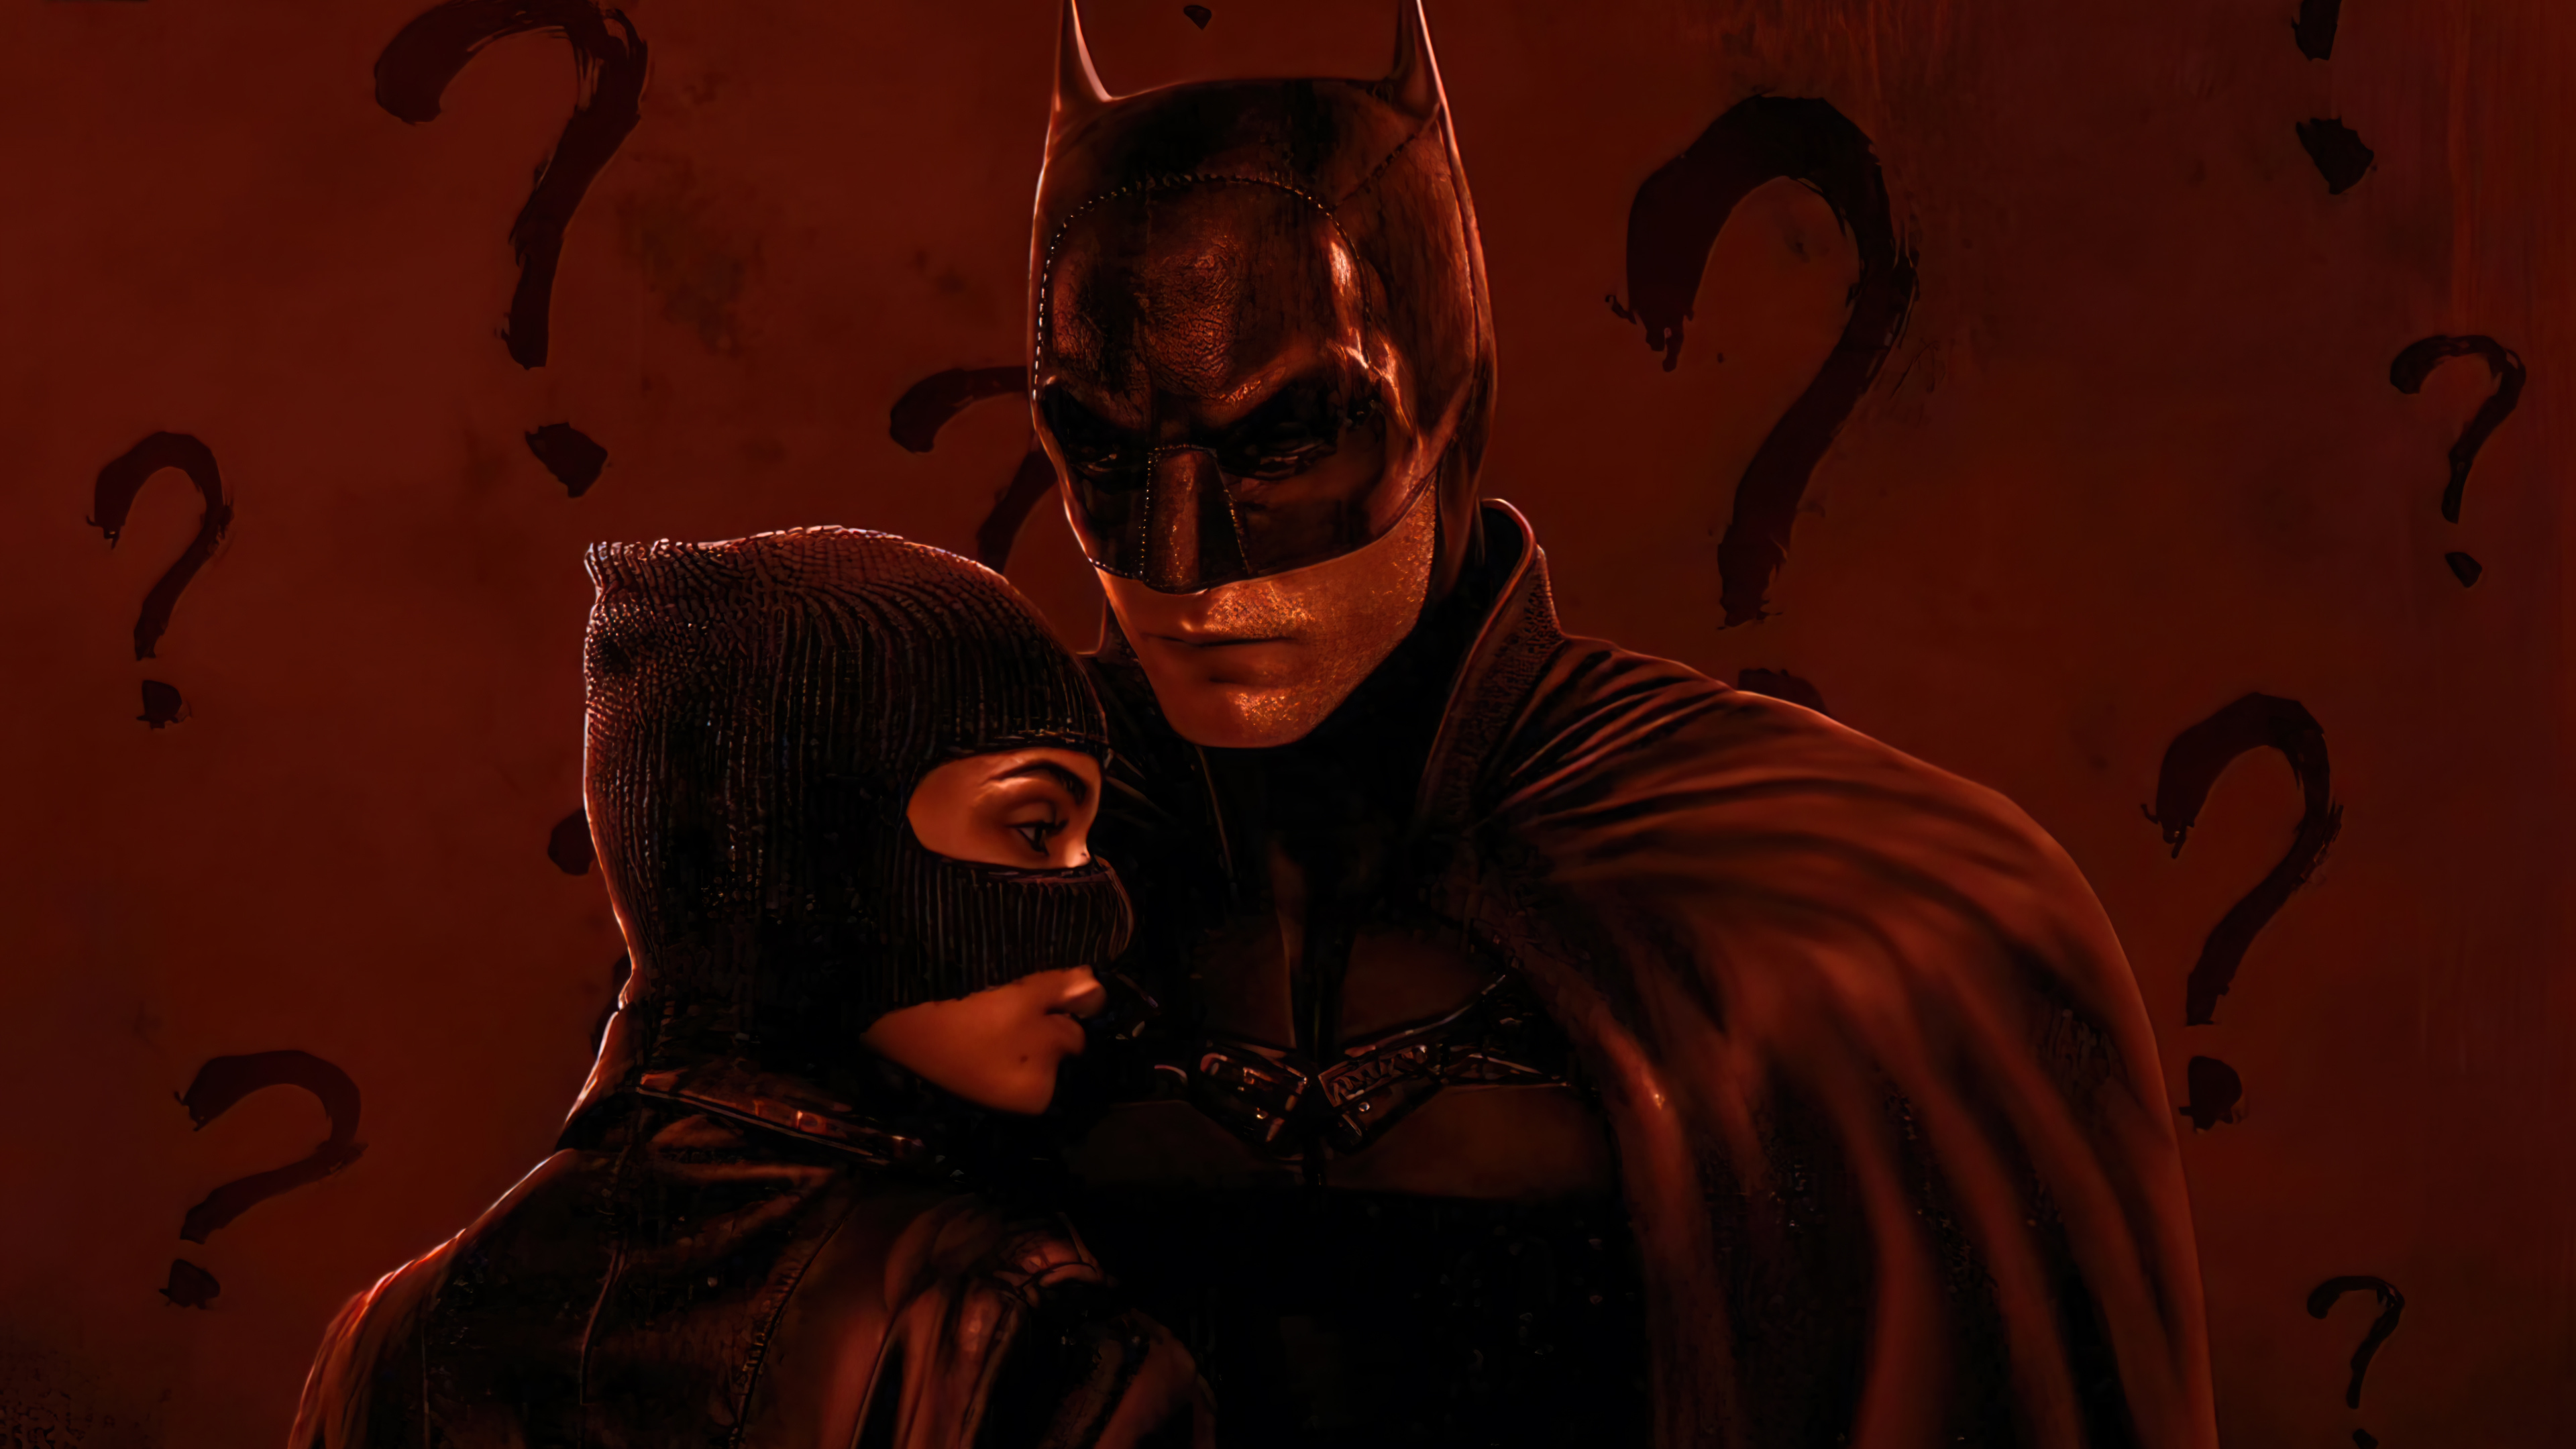 Batman Catwoman 2022 Movie PC DeskK Wallpaper free Download